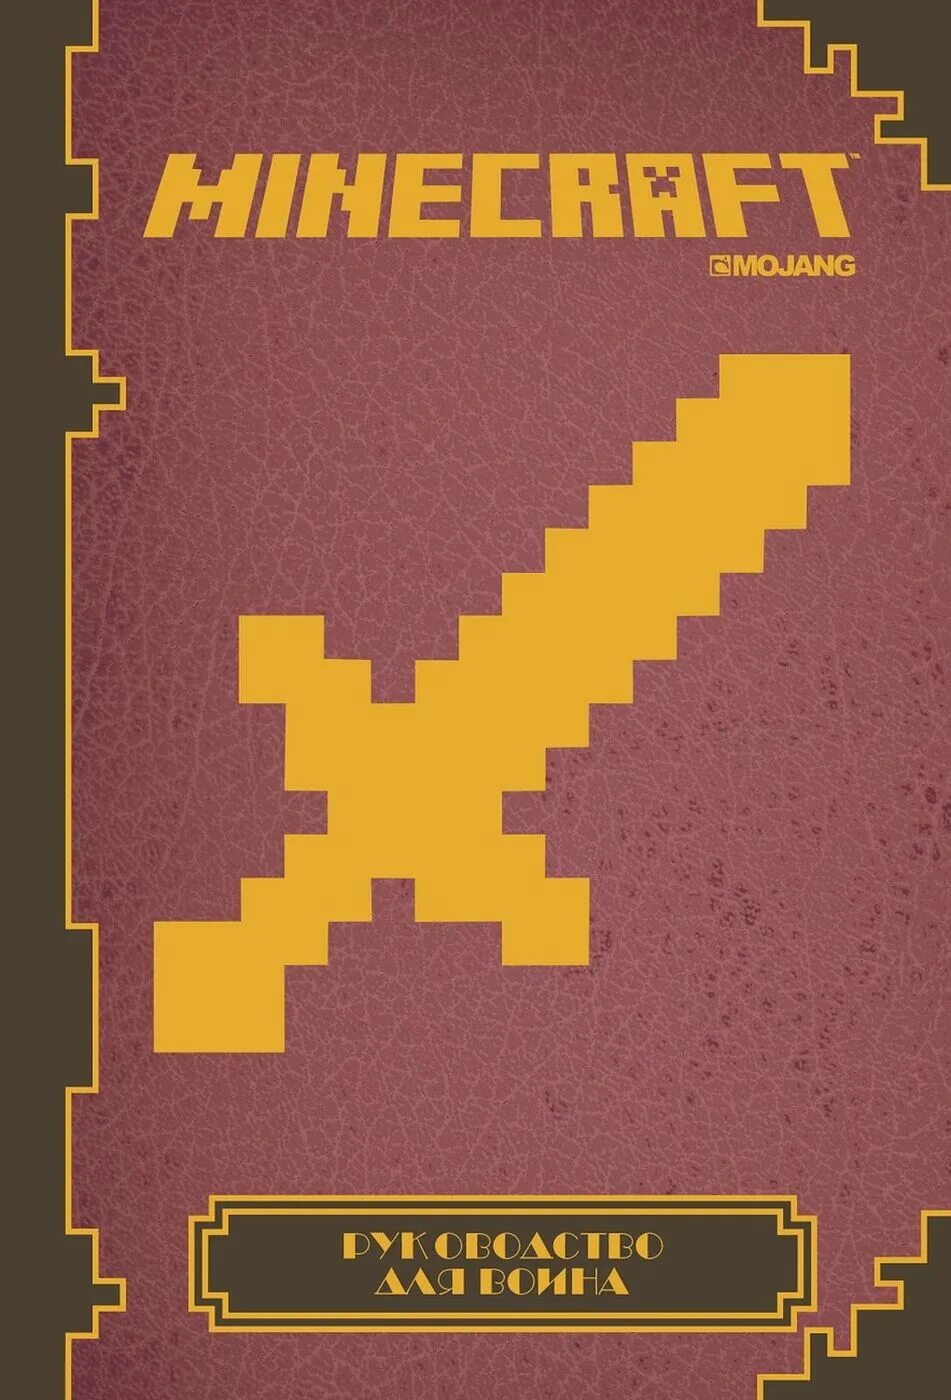 Продолжай книгу майнкрафт. Minecraft книга. Книги по майнкрафту. Книга руководство для воина Minecraft. Майнкрафт справочник книга.